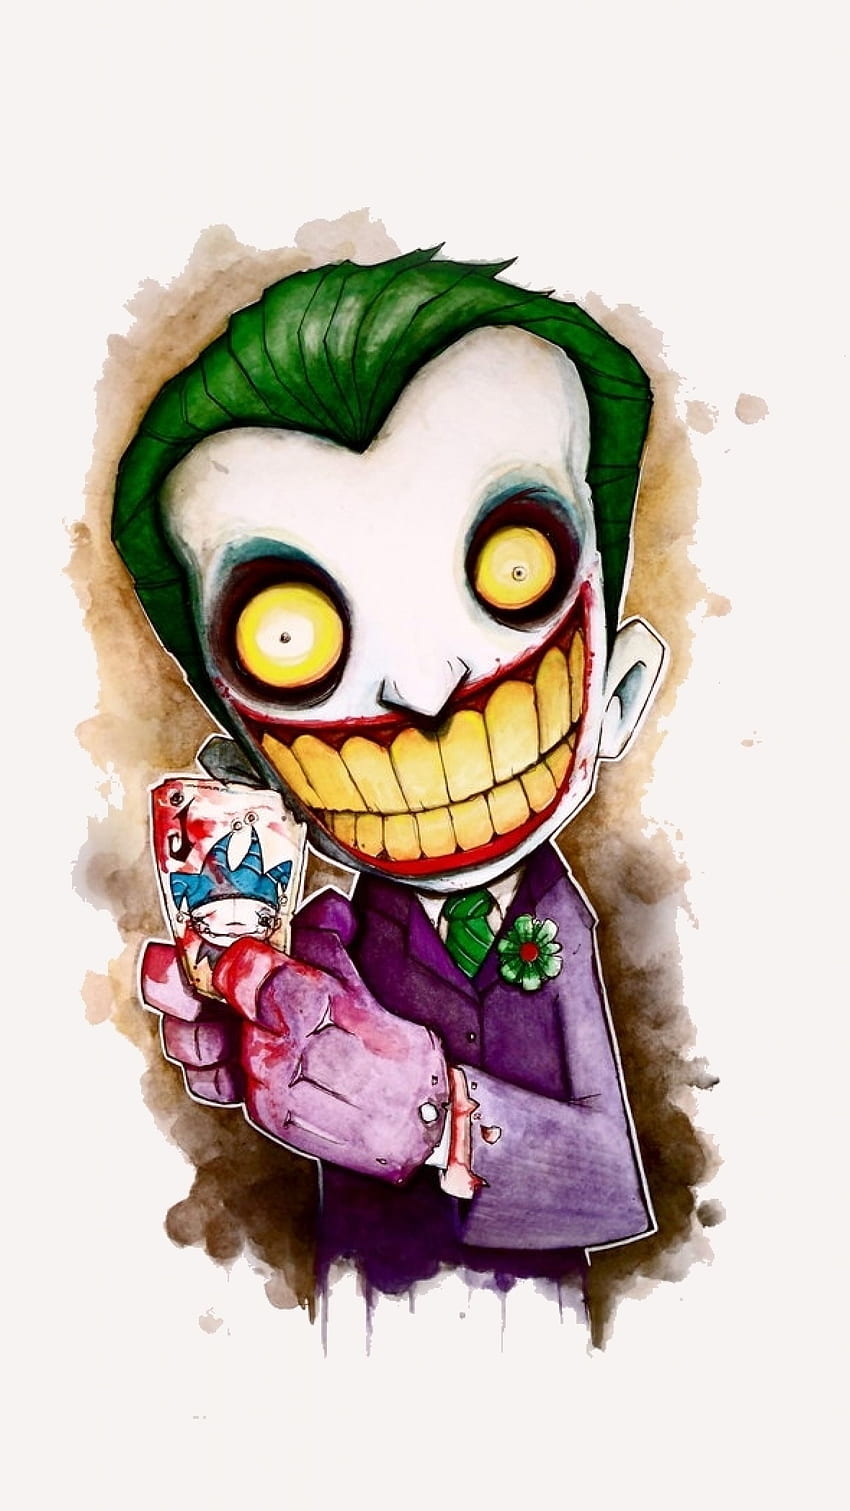 Joker anime là một nhân vật đầy bất ngờ và kịch tính. Hãy xem ngay bức ảnh này để tìm hiểu thêm về nhân vật này và sức mạnh của anh ta trong thế giới anime. Joker sẽ khiến bạn phải ngỡ ngàng với màn biểu diễn của mình!